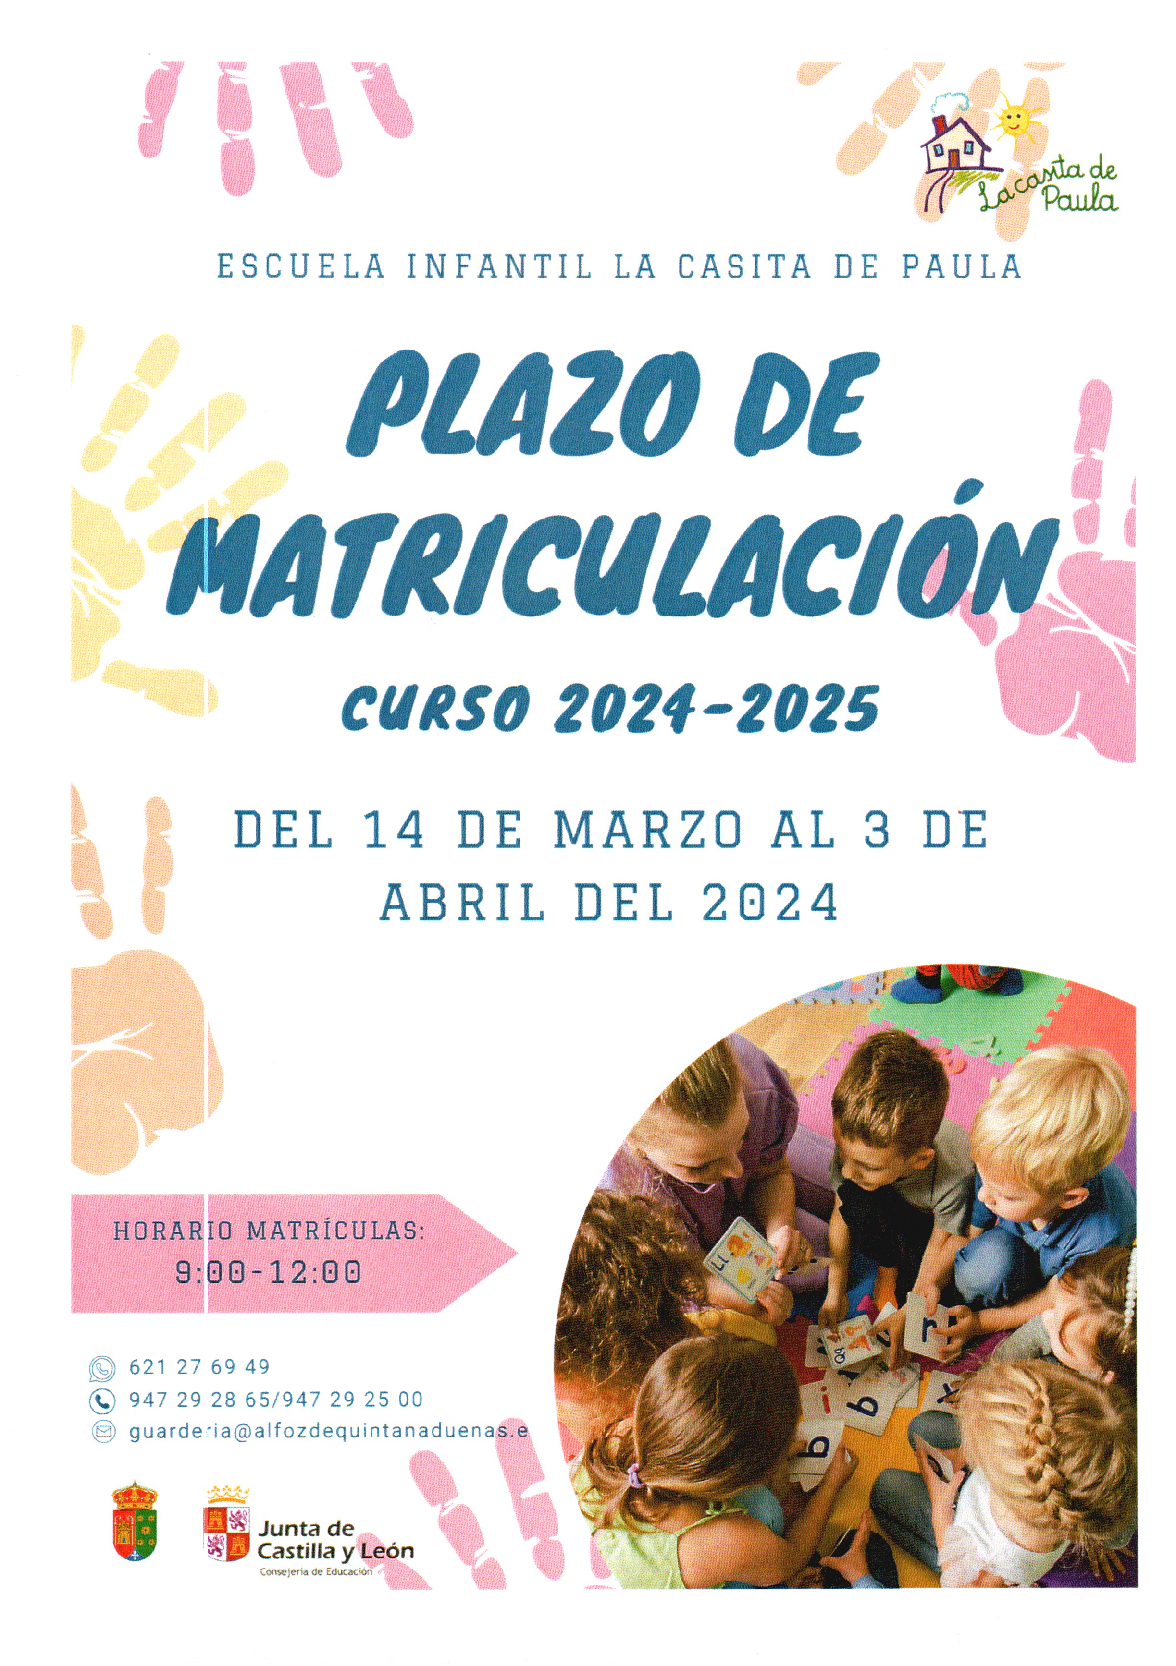 Abierto plazo matriculación curso 2024-2025 de la Escuela Infantil La Casita de Paula